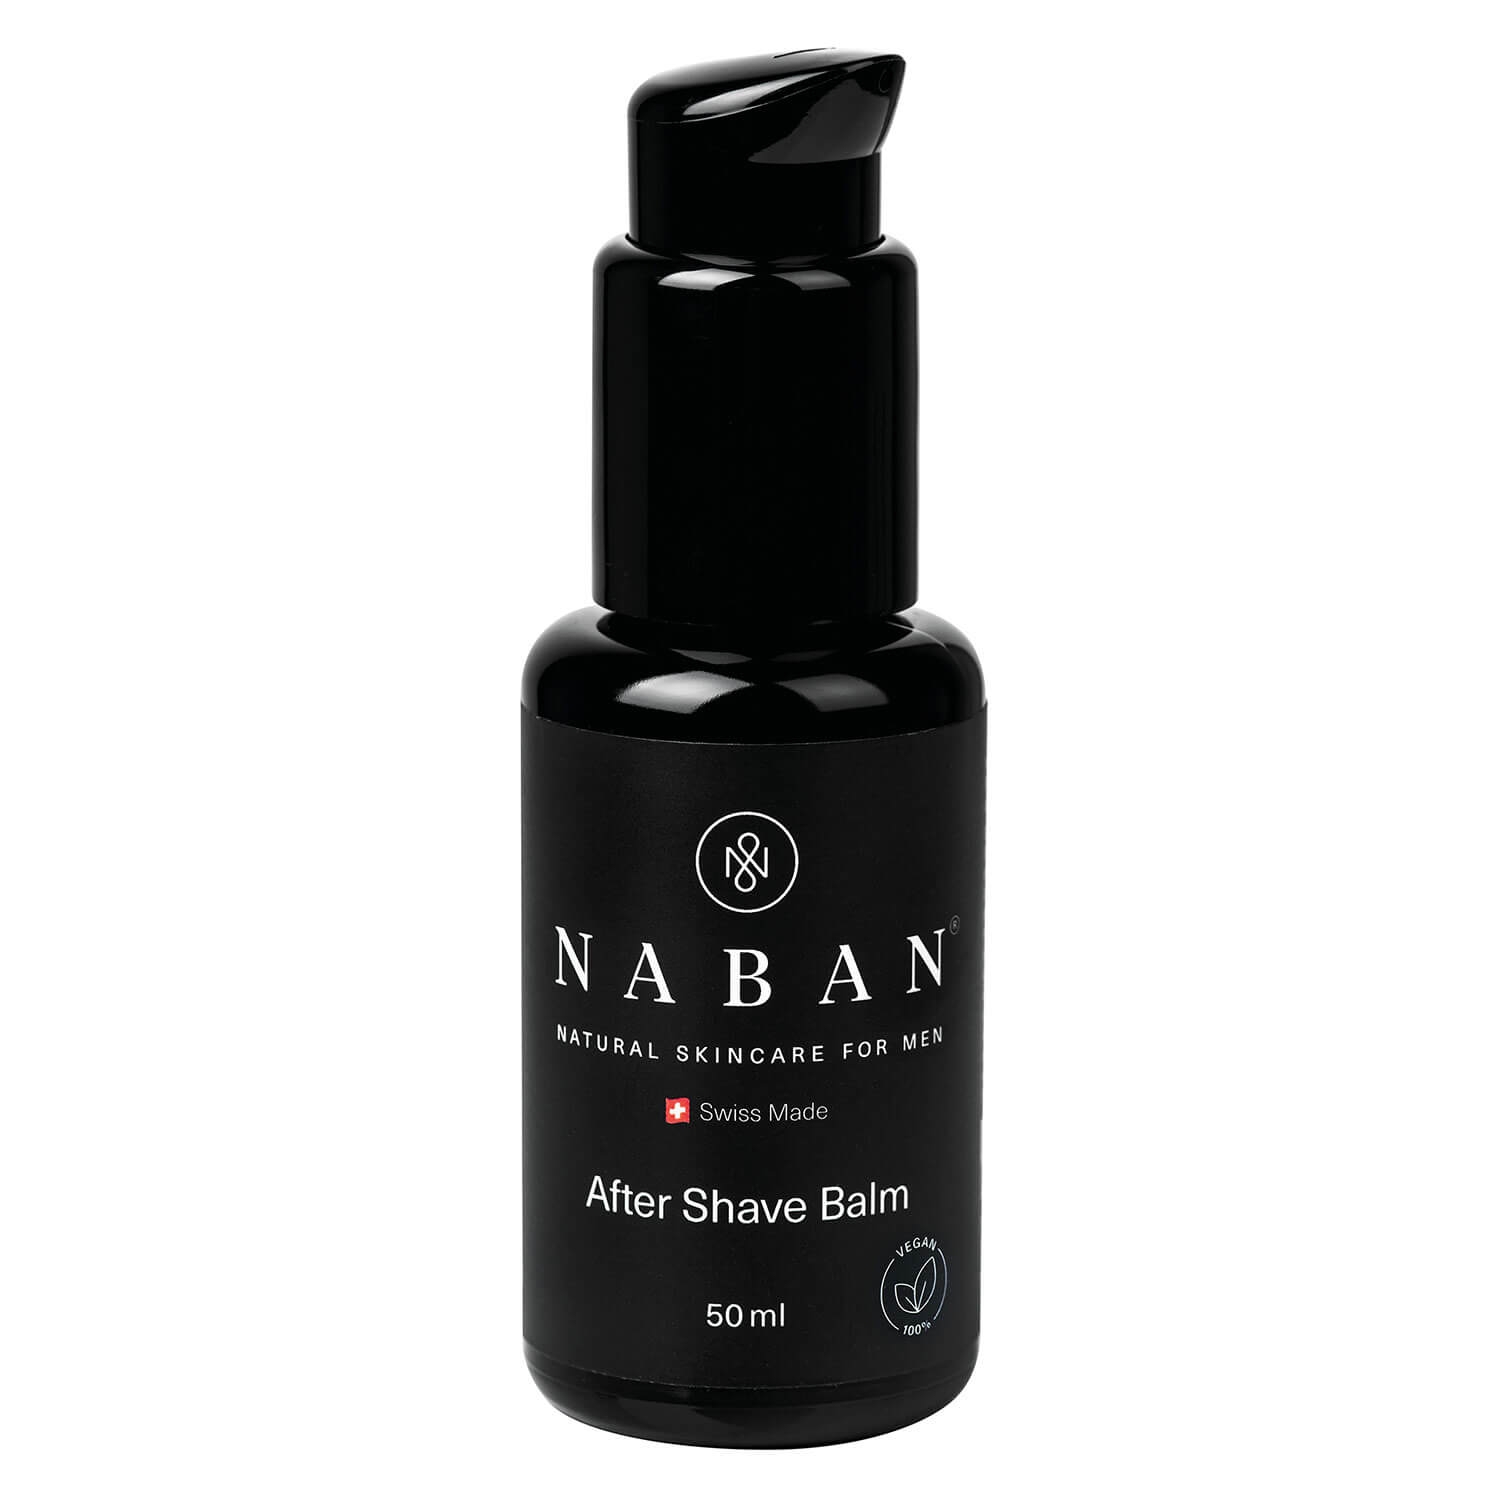 Produktbild von NABAN - After Shave Balm